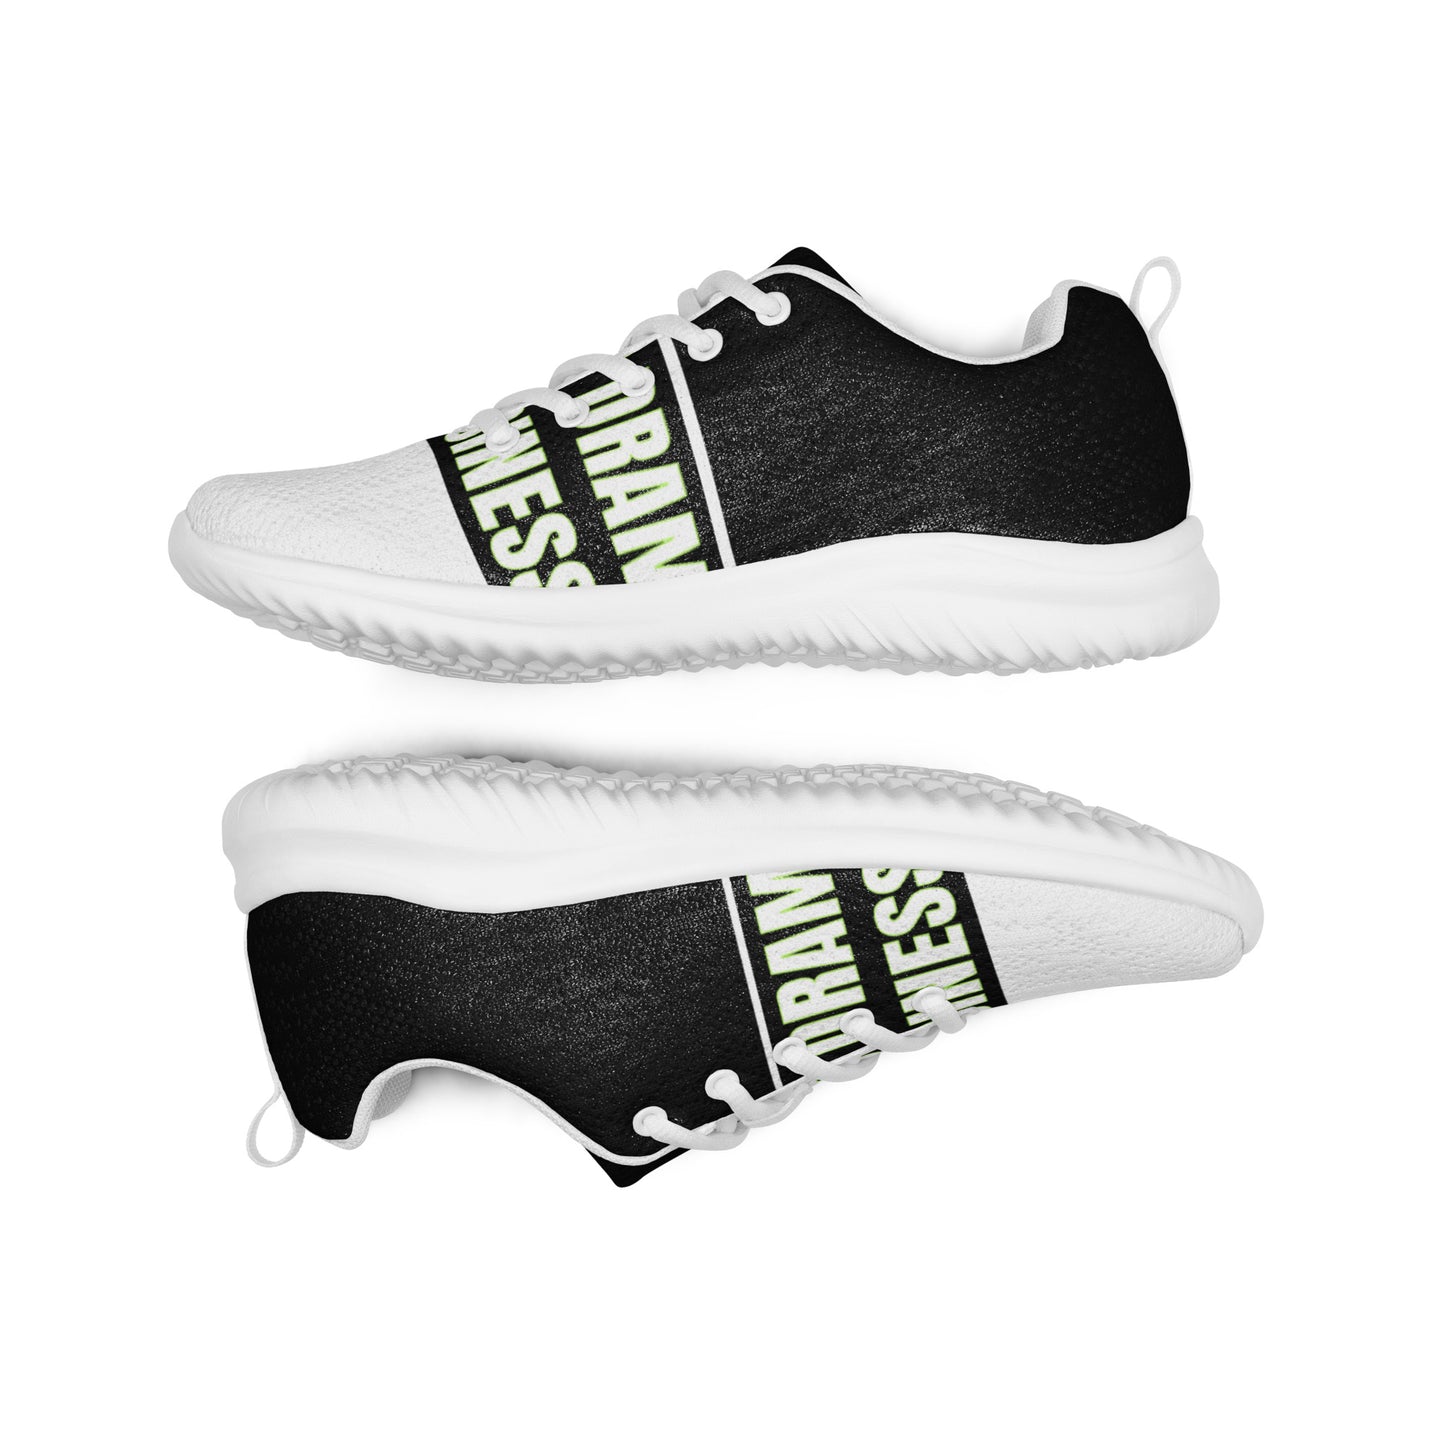 Men’s athletic shoes on sale until june